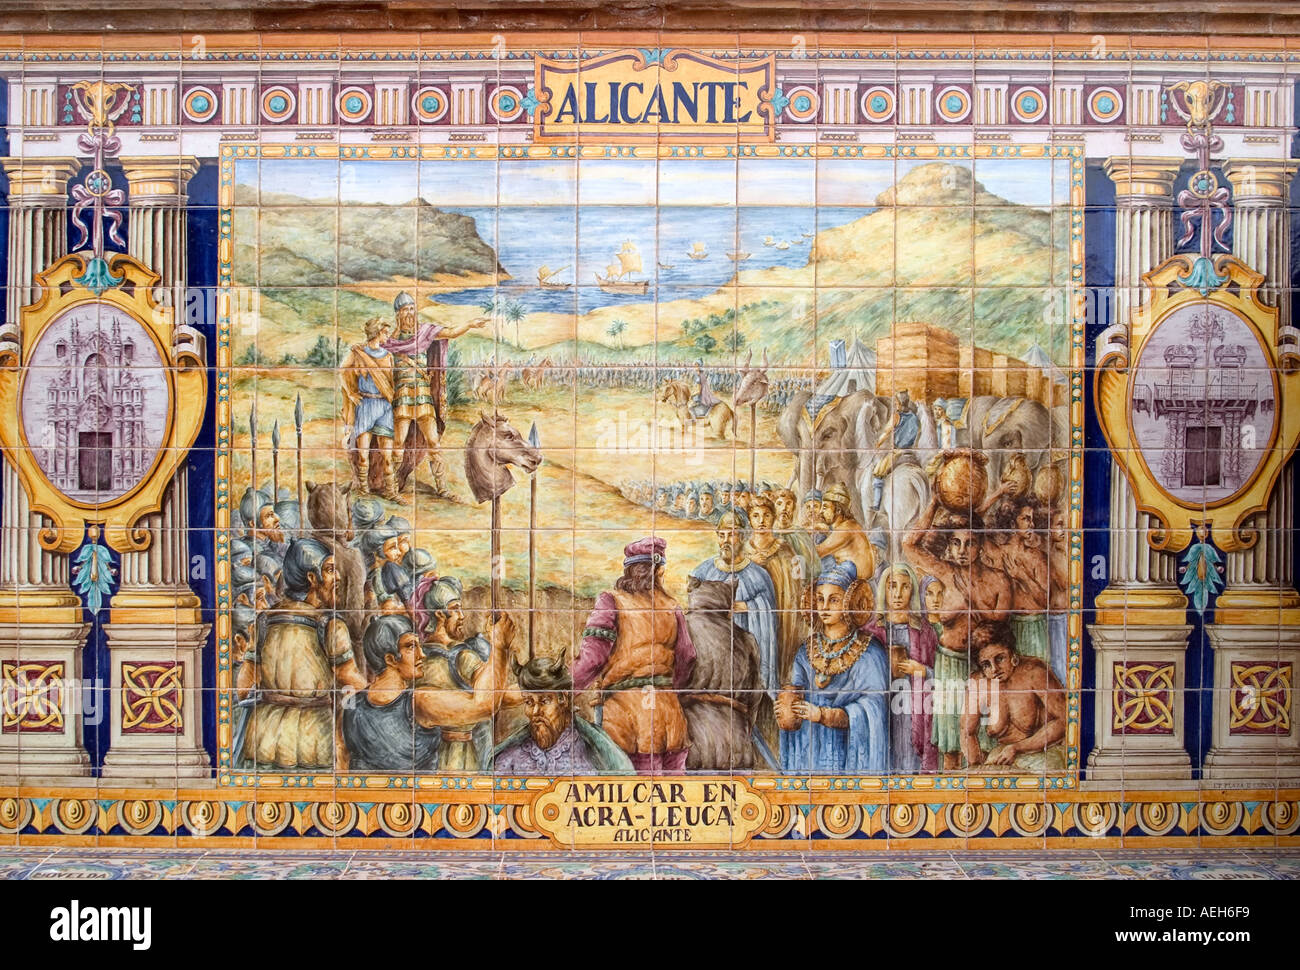 Ceramic representing Alicante Province in Plaza de España, Seville, Spain Stock Photo